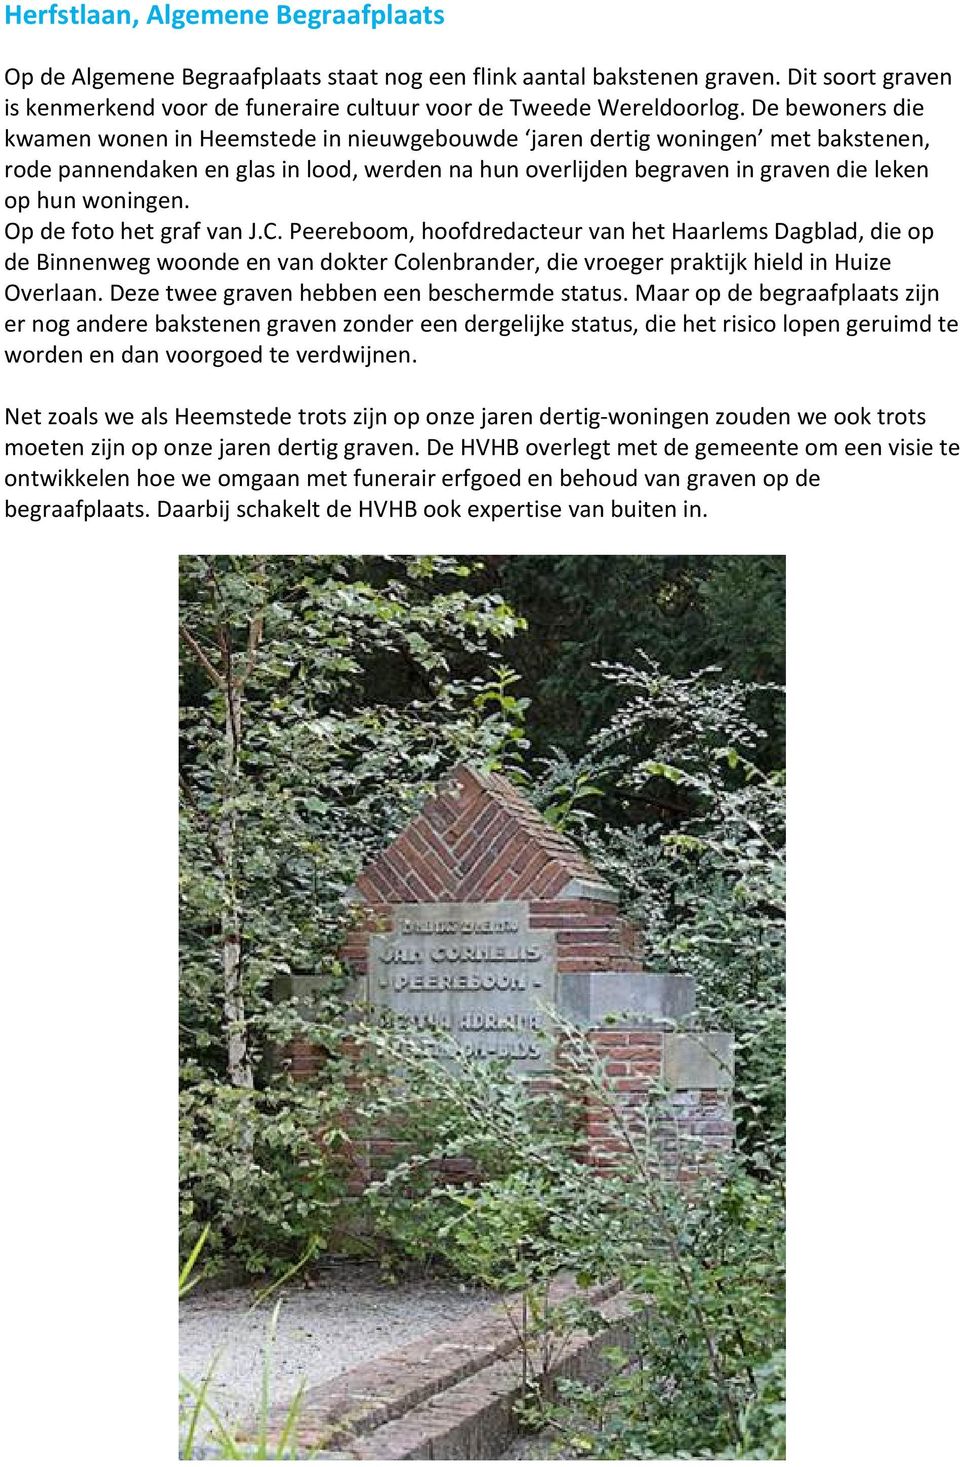 Op de foto het graf van J.C. Peereboom, hoofdredacteur van het Haarlems Dagblad, die op de Binnenweg woonde en van dokter Colenbrander, die vroeger praktijk hield in Huize Overlaan.